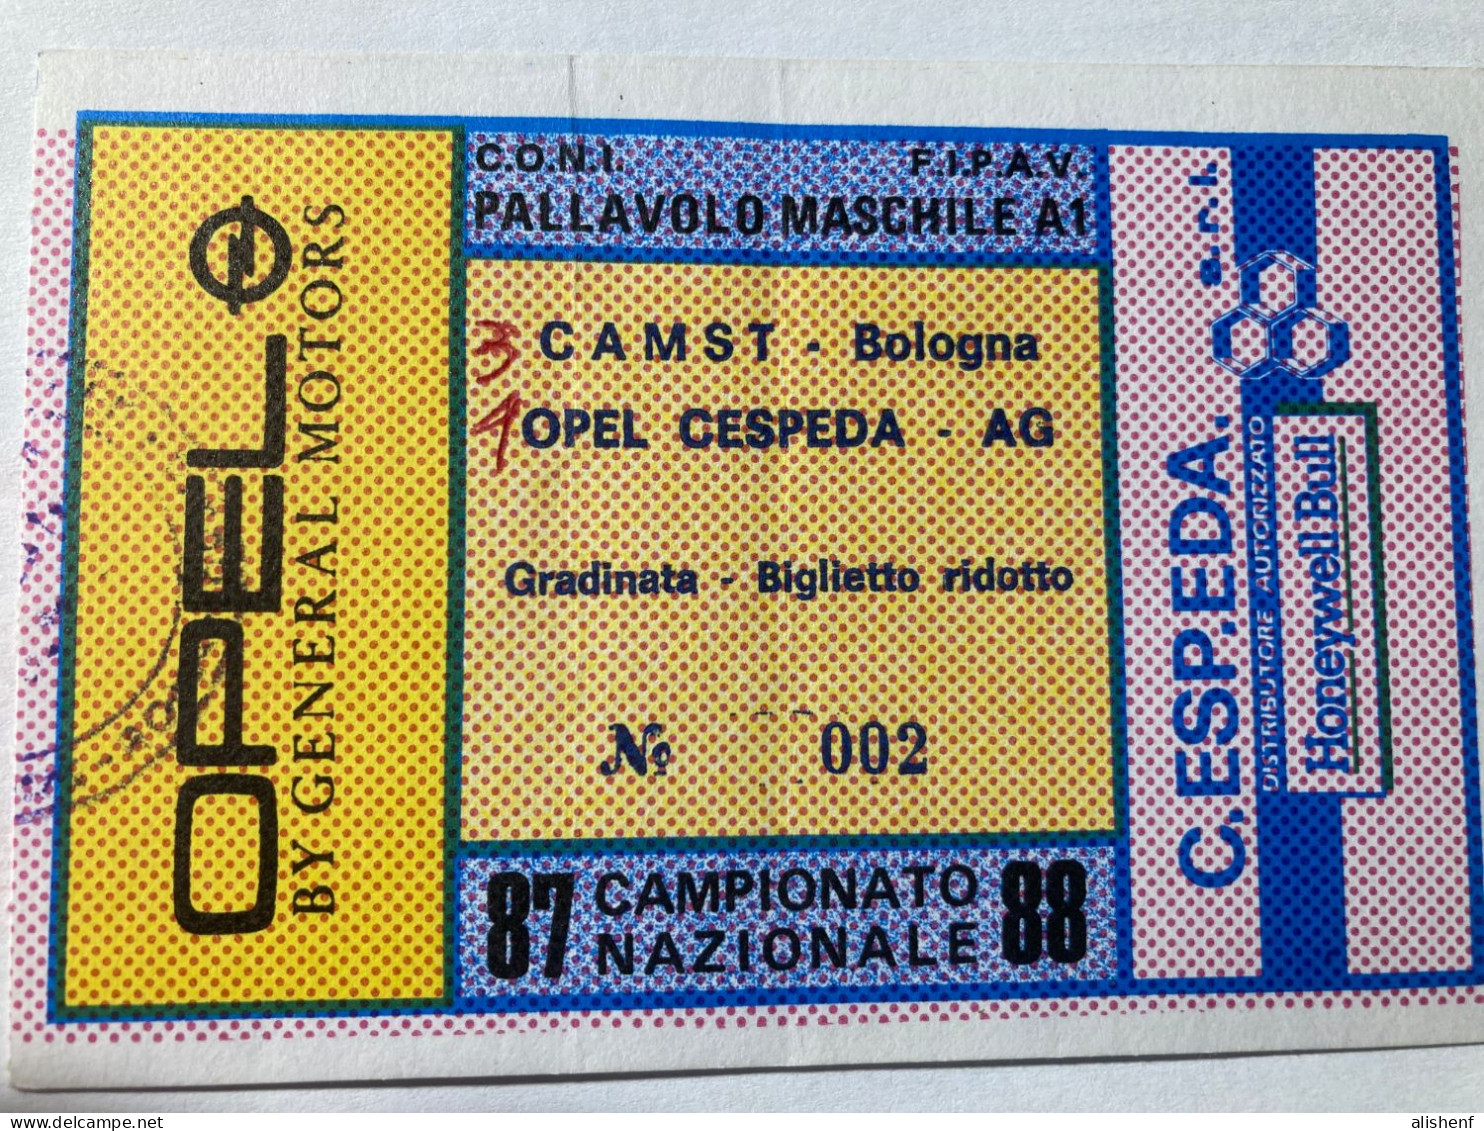 Biglietto Pallavolo Maschile A1 Opel Cespeda Agrigento CAMST Bologna Campionato 1987-88 - Tickets D'entrée